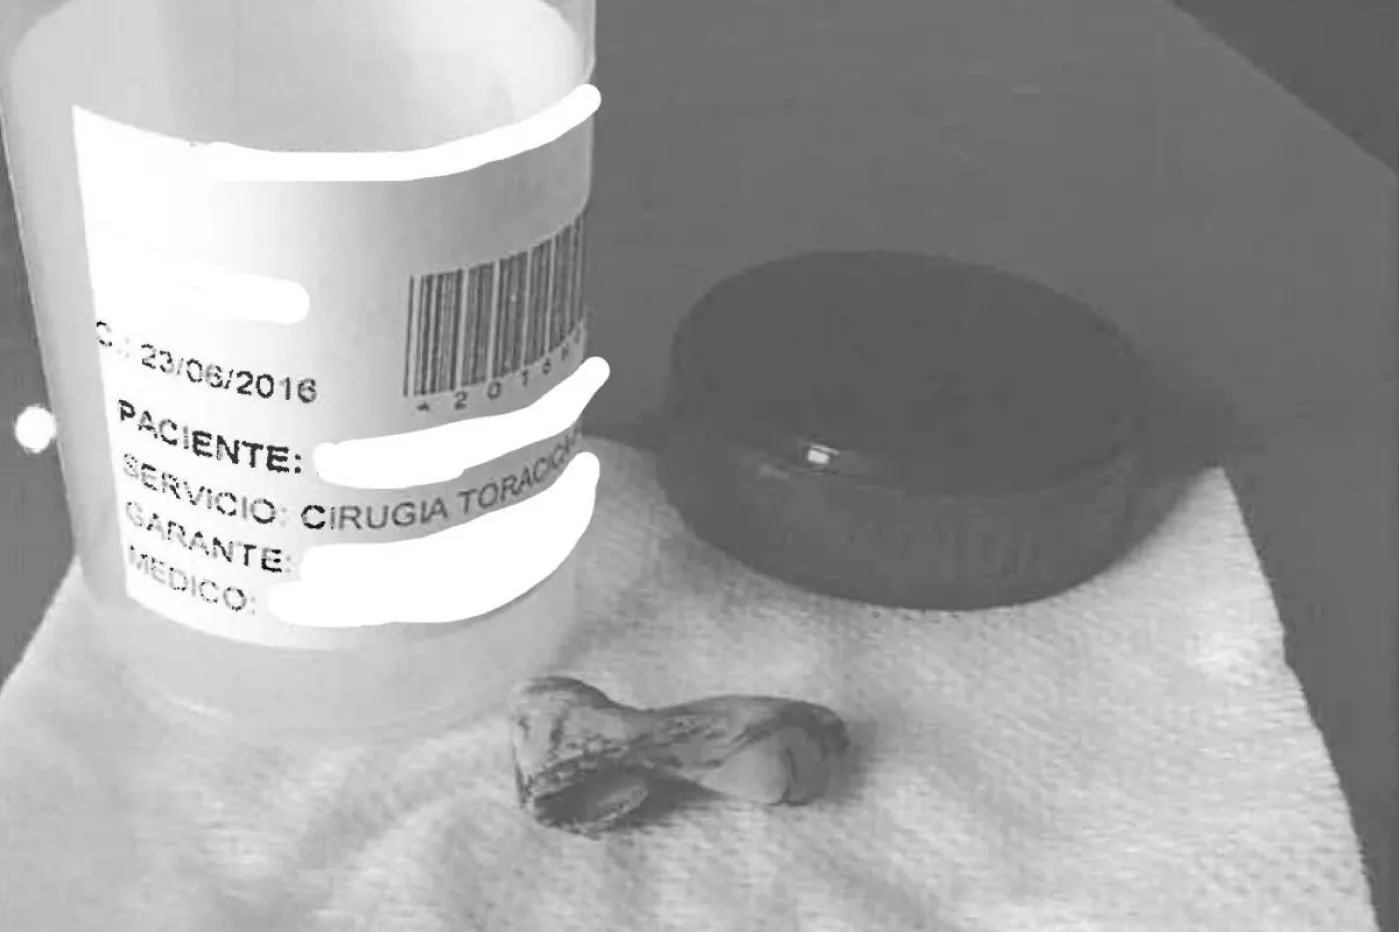 Pieza de cemento de 3 centímetros extraída del cuerpo de la paciente. 